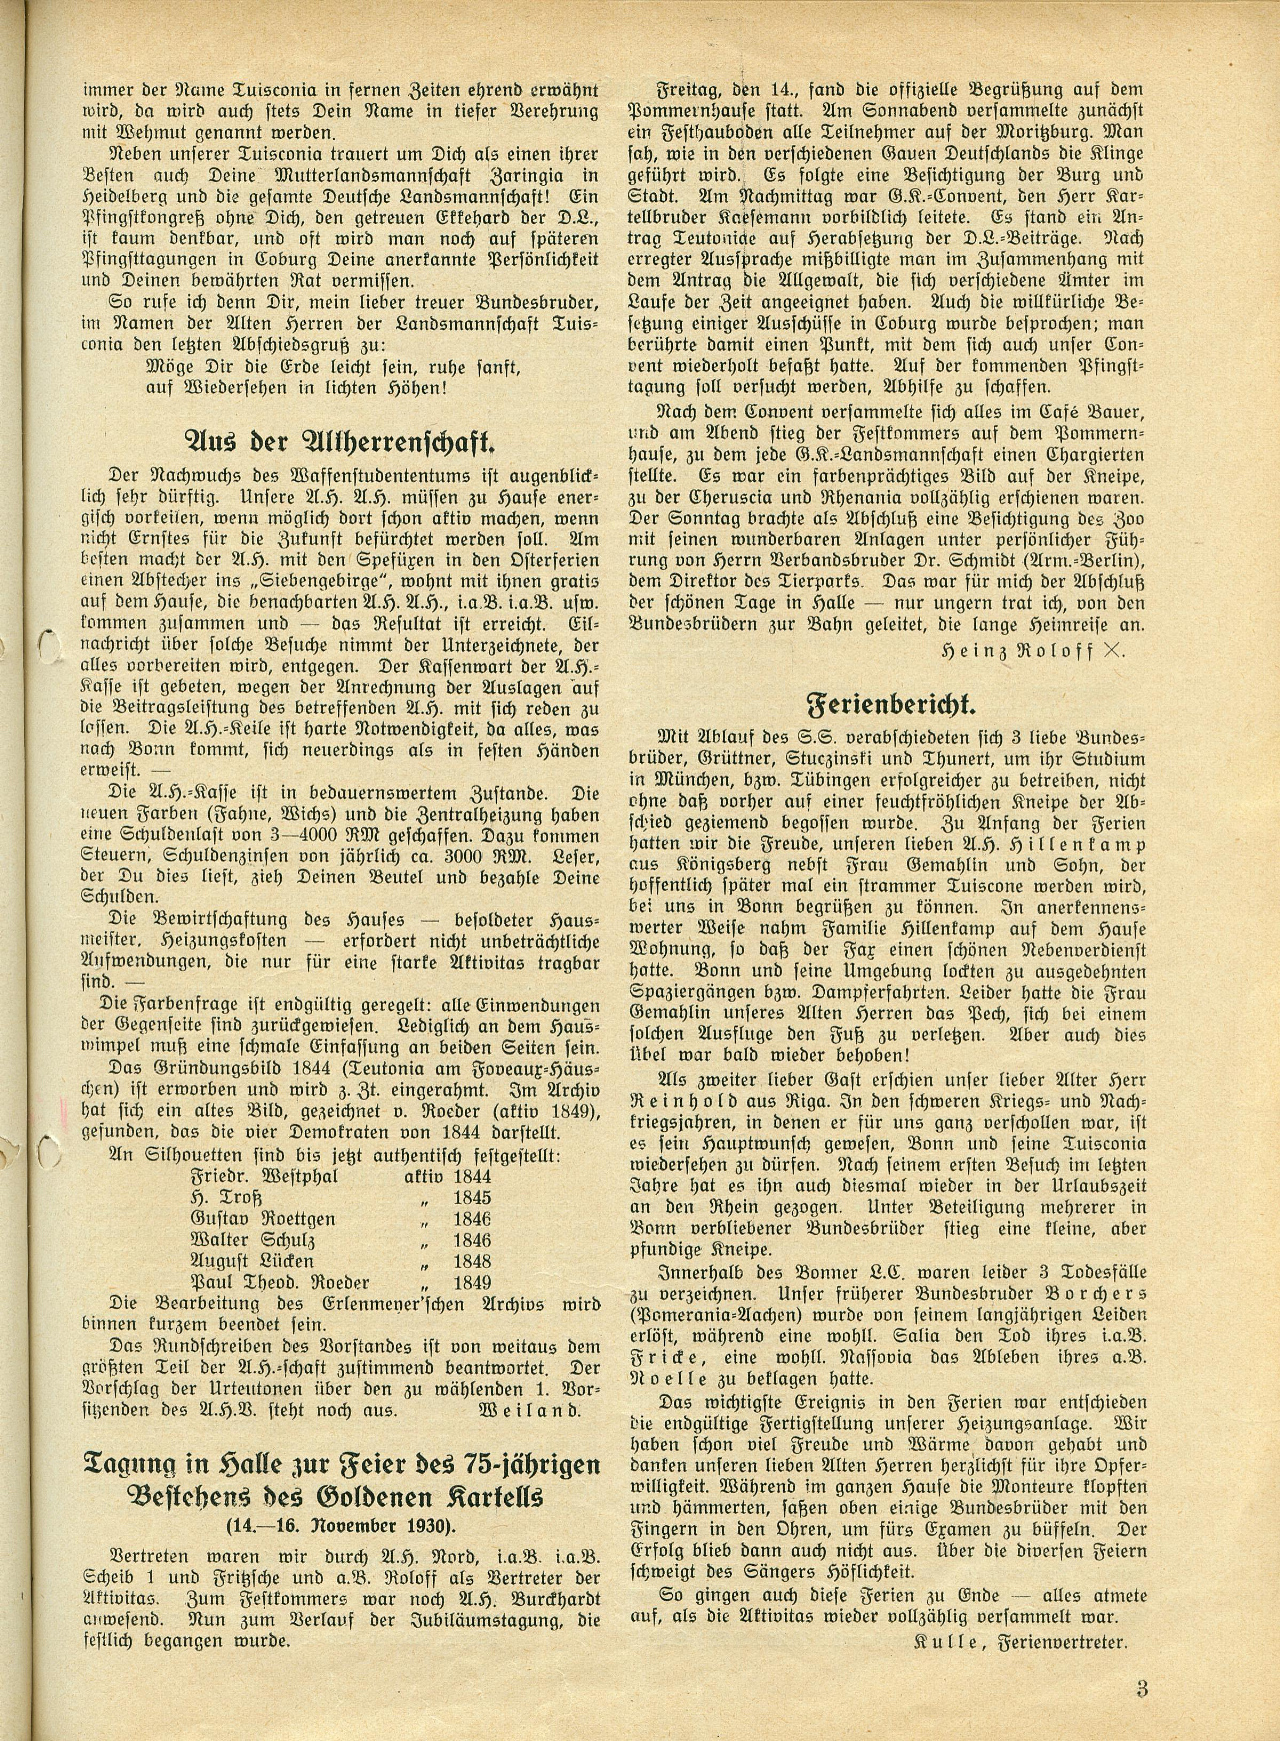 Tuisconen-Zeitung 1931